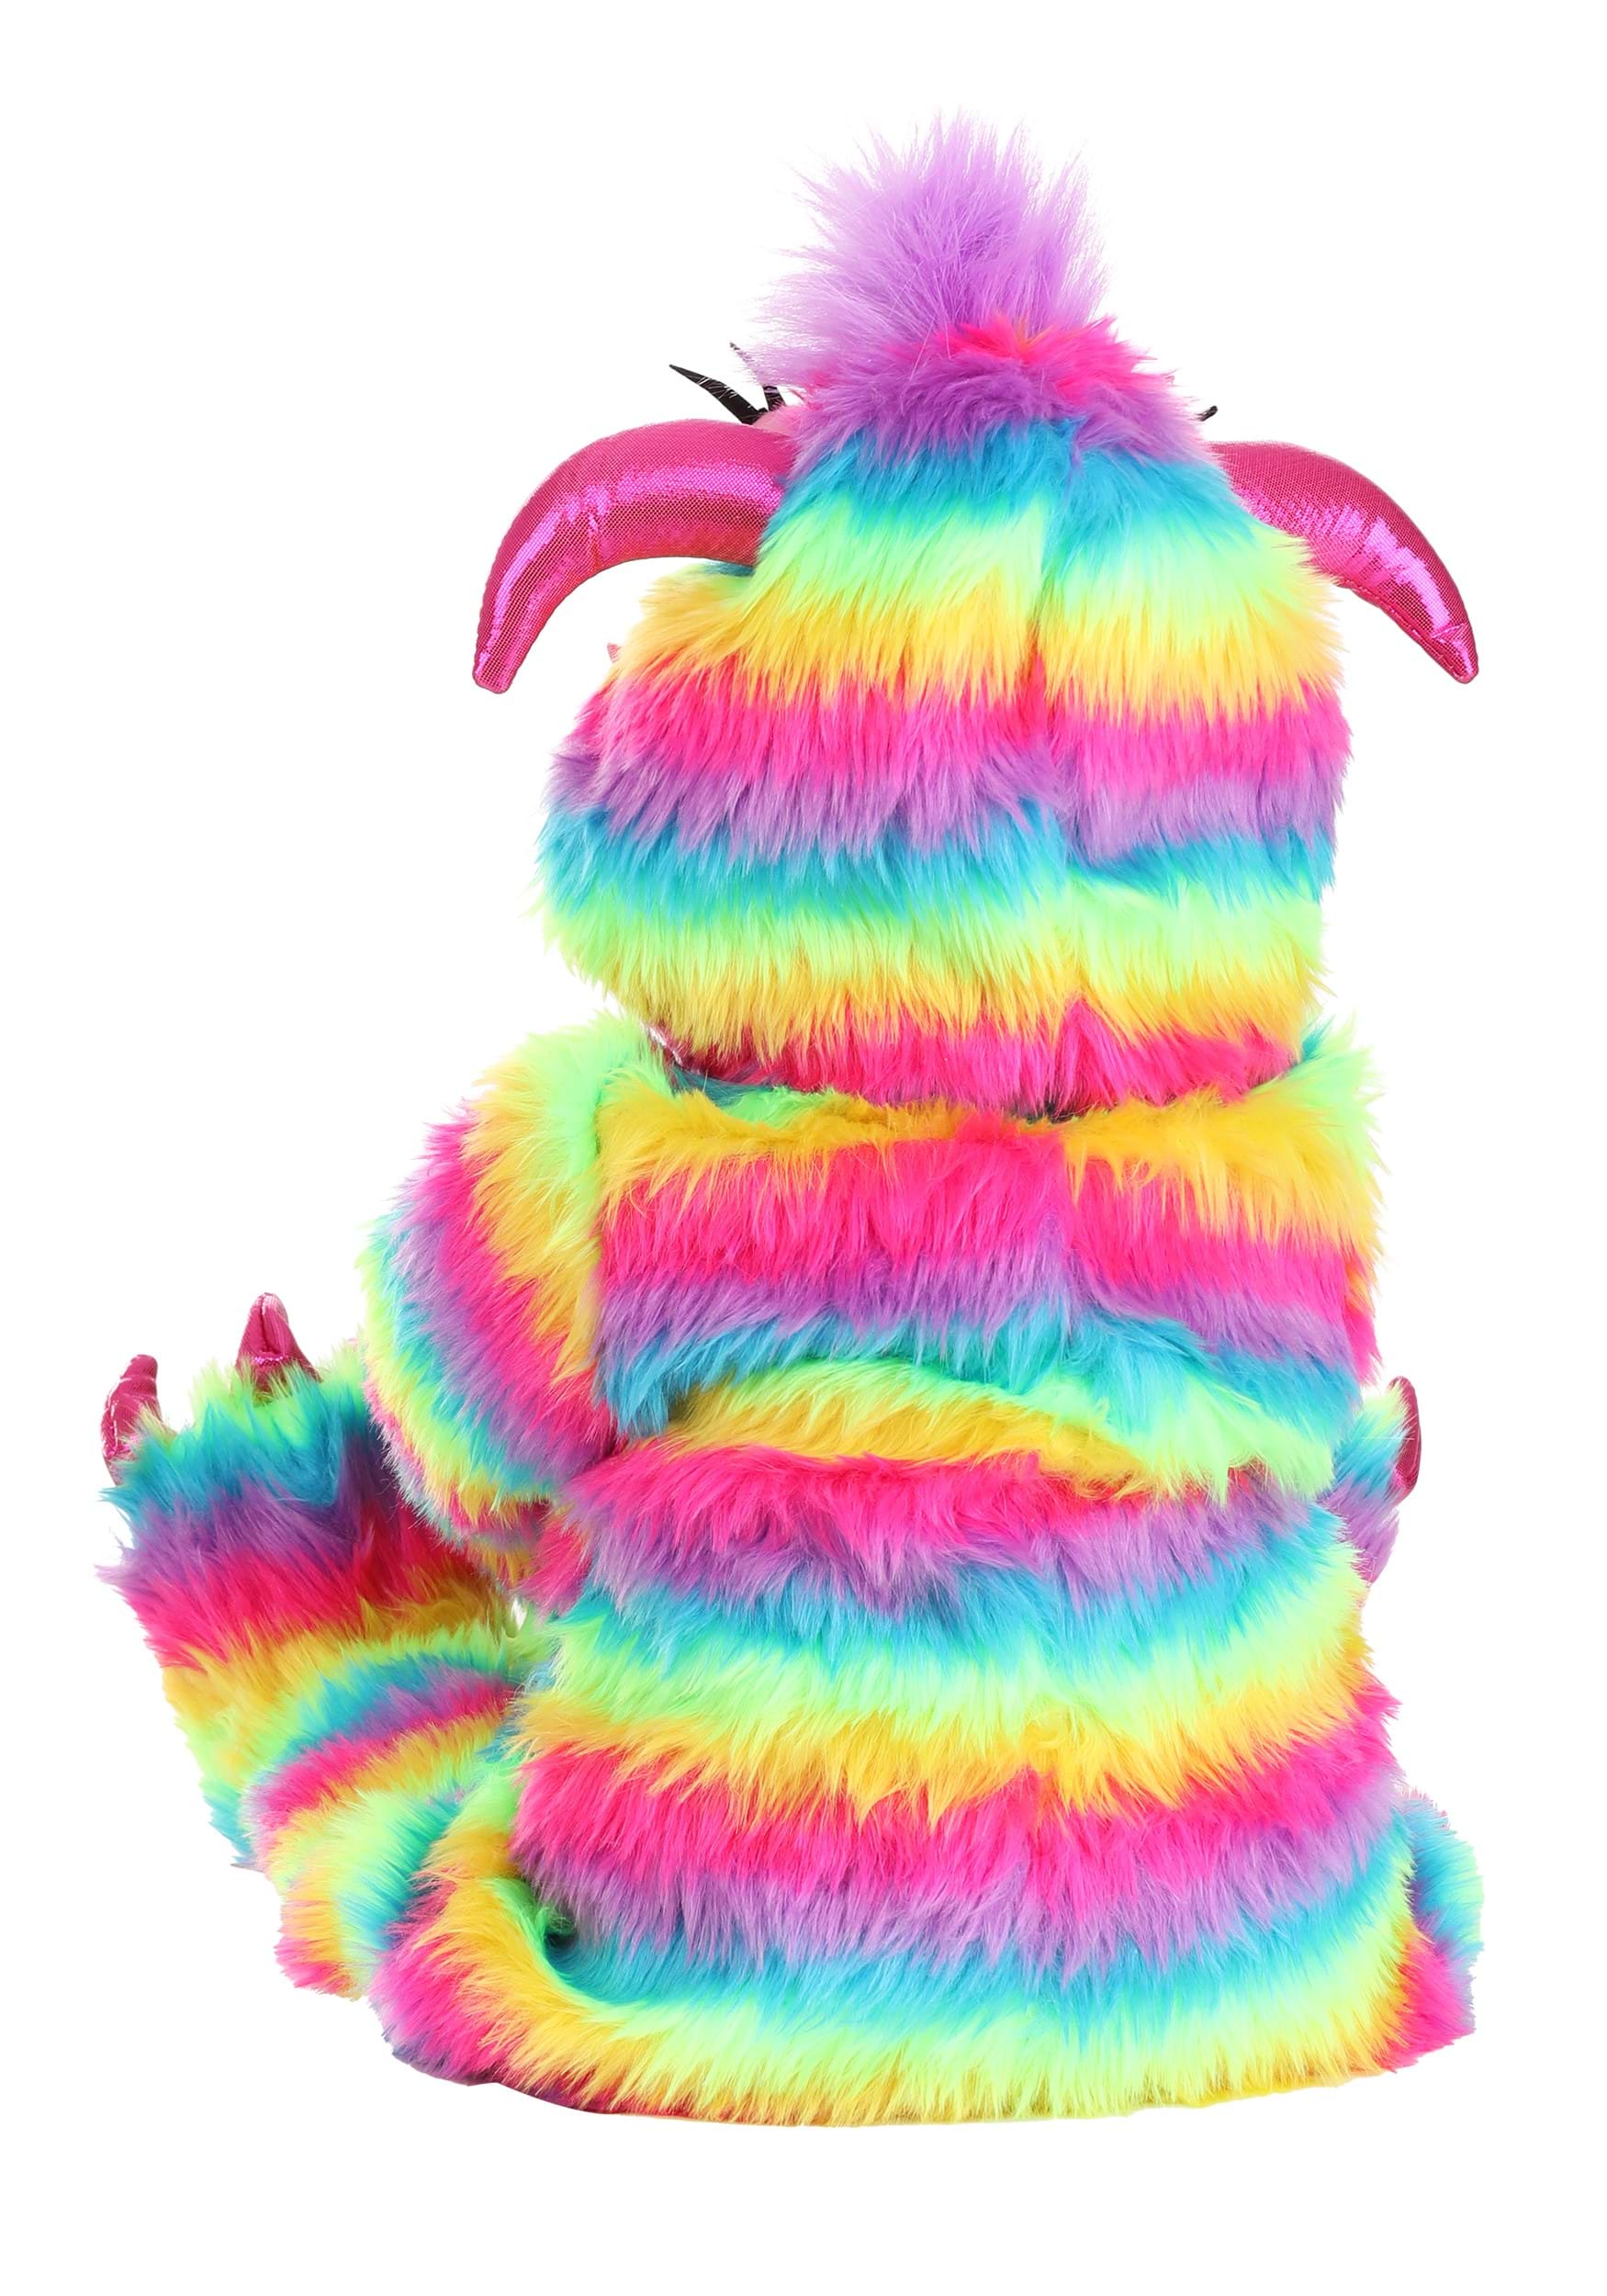 Rainbow Infant Monster Costume